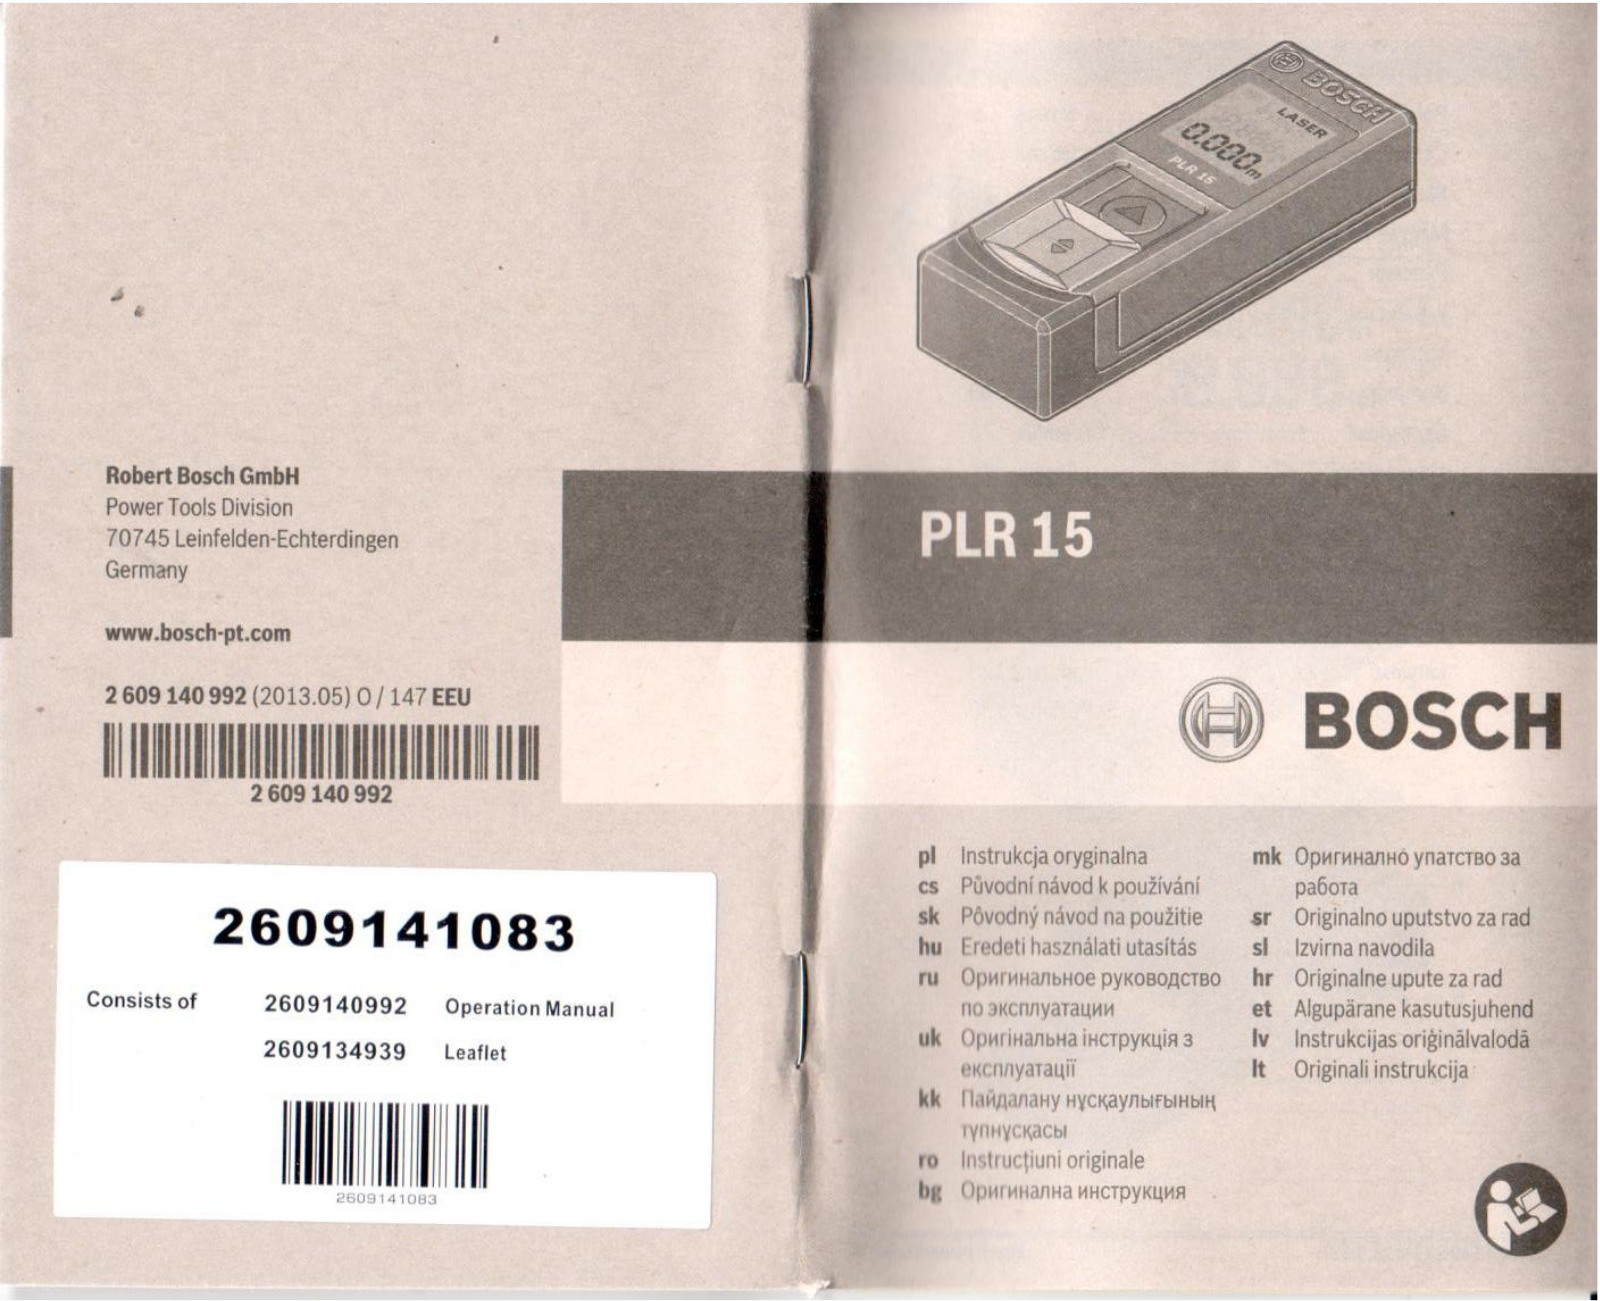 Bosch PLR 15 + PMD7 User Manual